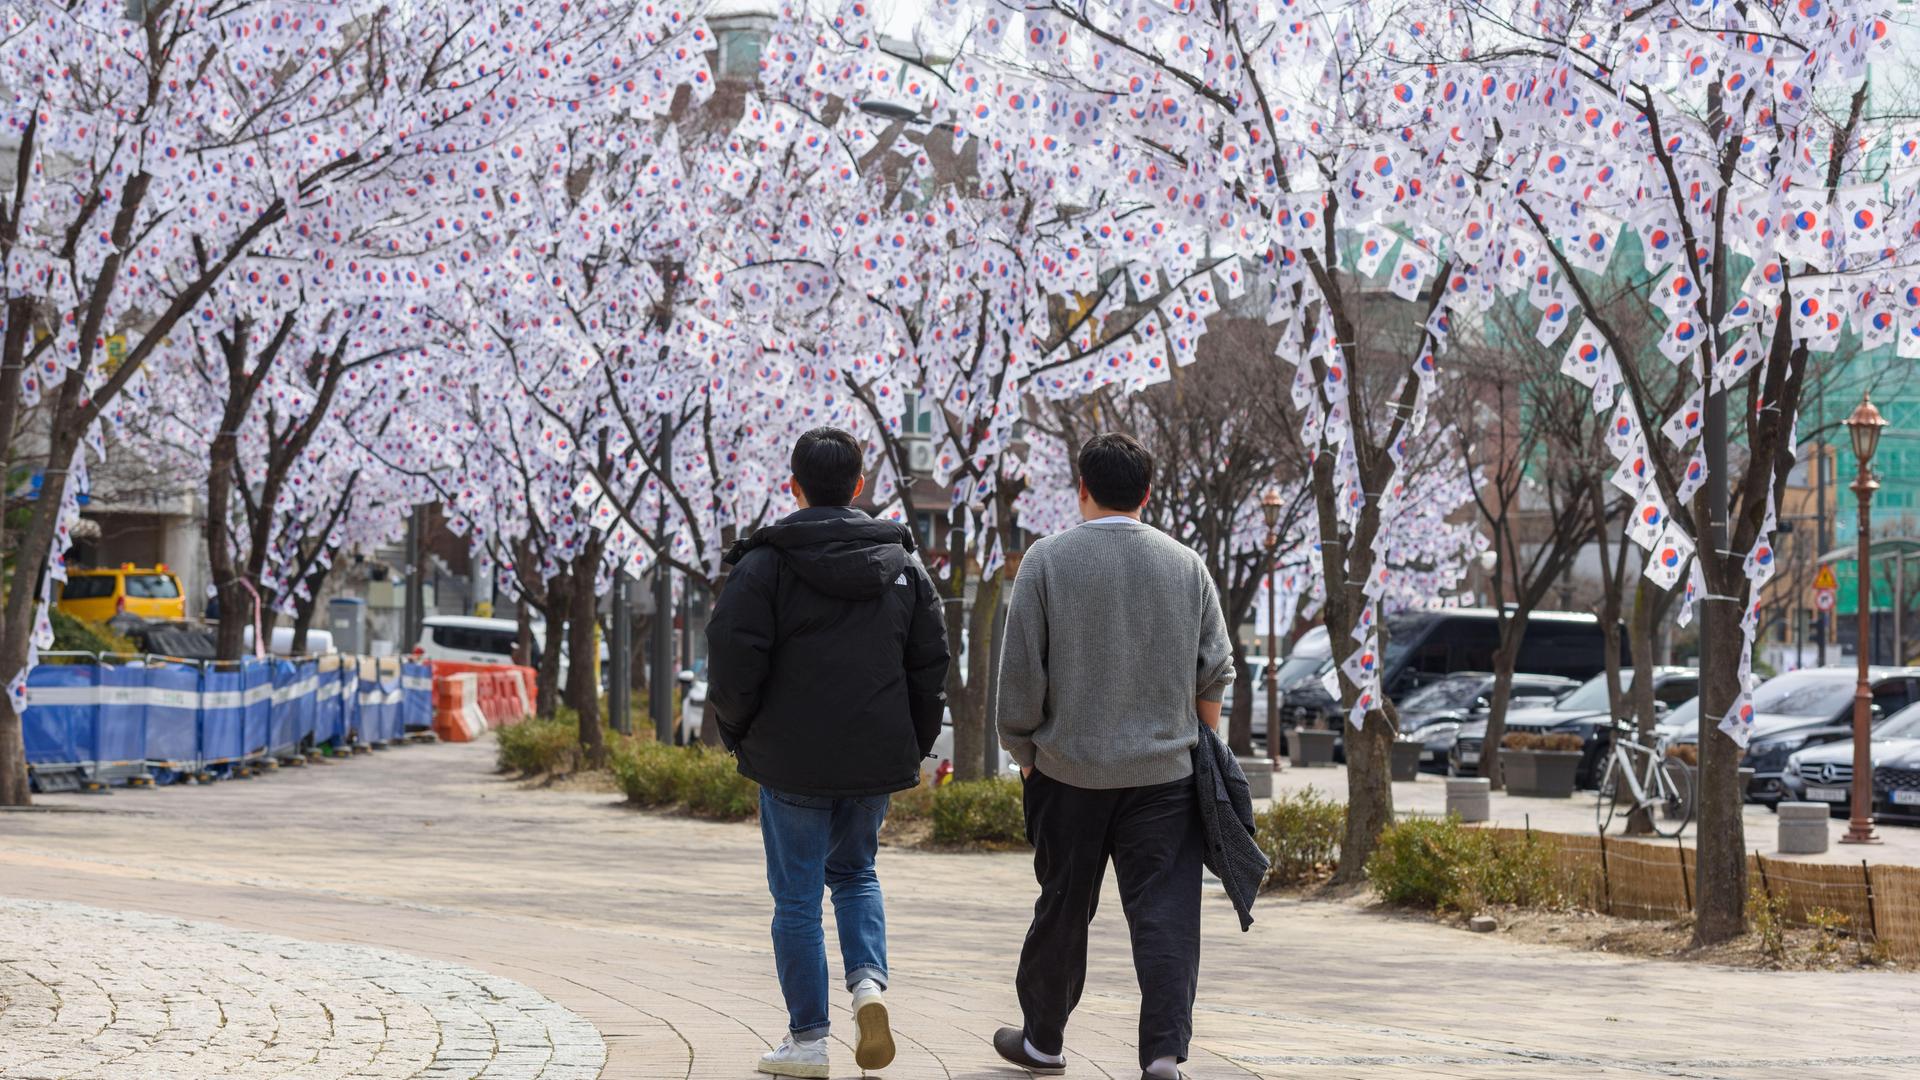 Am Eingang des Hyochang Parks in Seoul hängen viele Fähnchen in den Bäumen. Sie erinnern an den Beginn der koreanischen Unabhängigkeitsbewegung